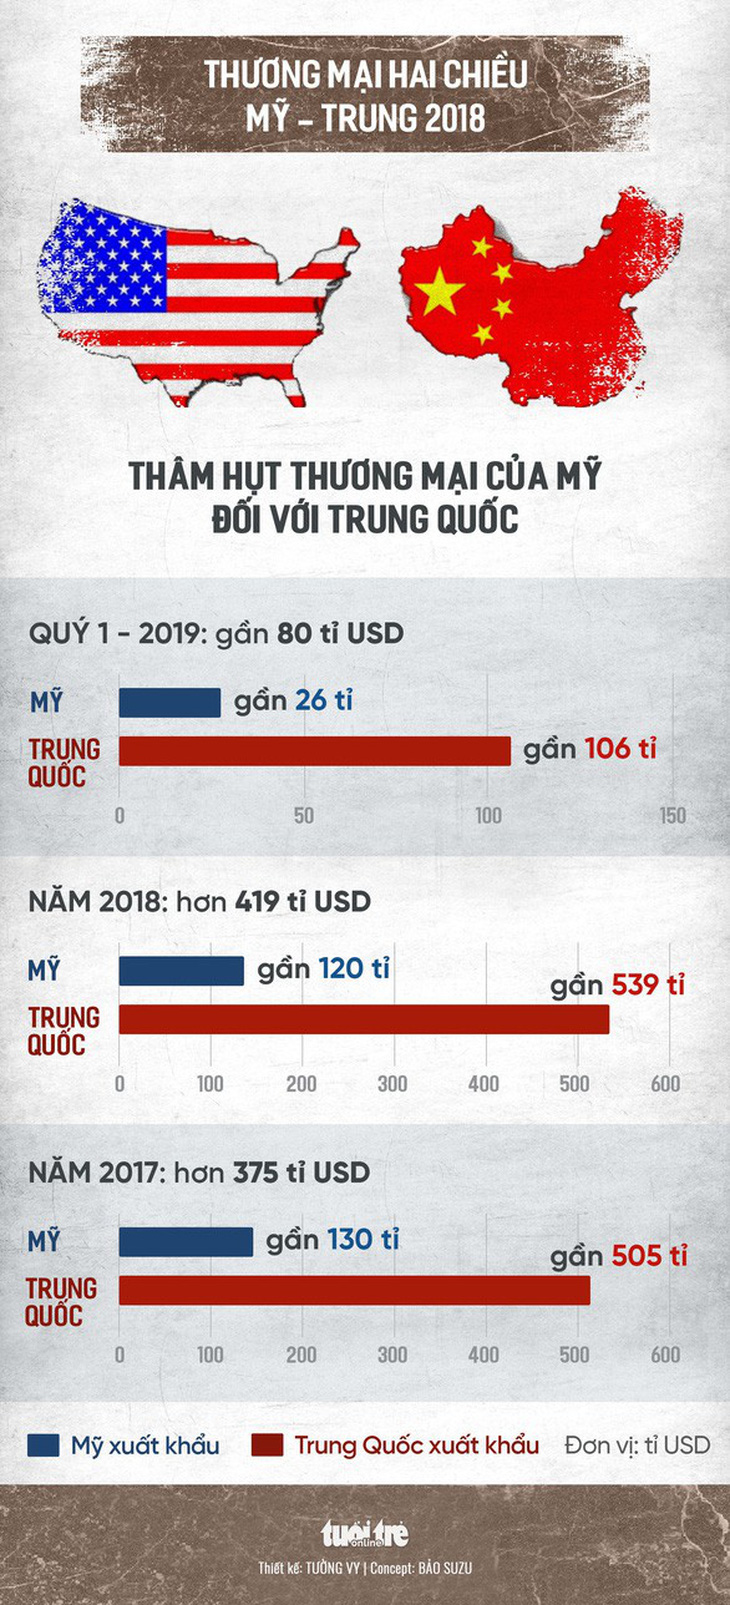 Ông Trump: Trung Quốc sợ các công ty chuyển qua Việt Nam và các nước khác - Ảnh 2.